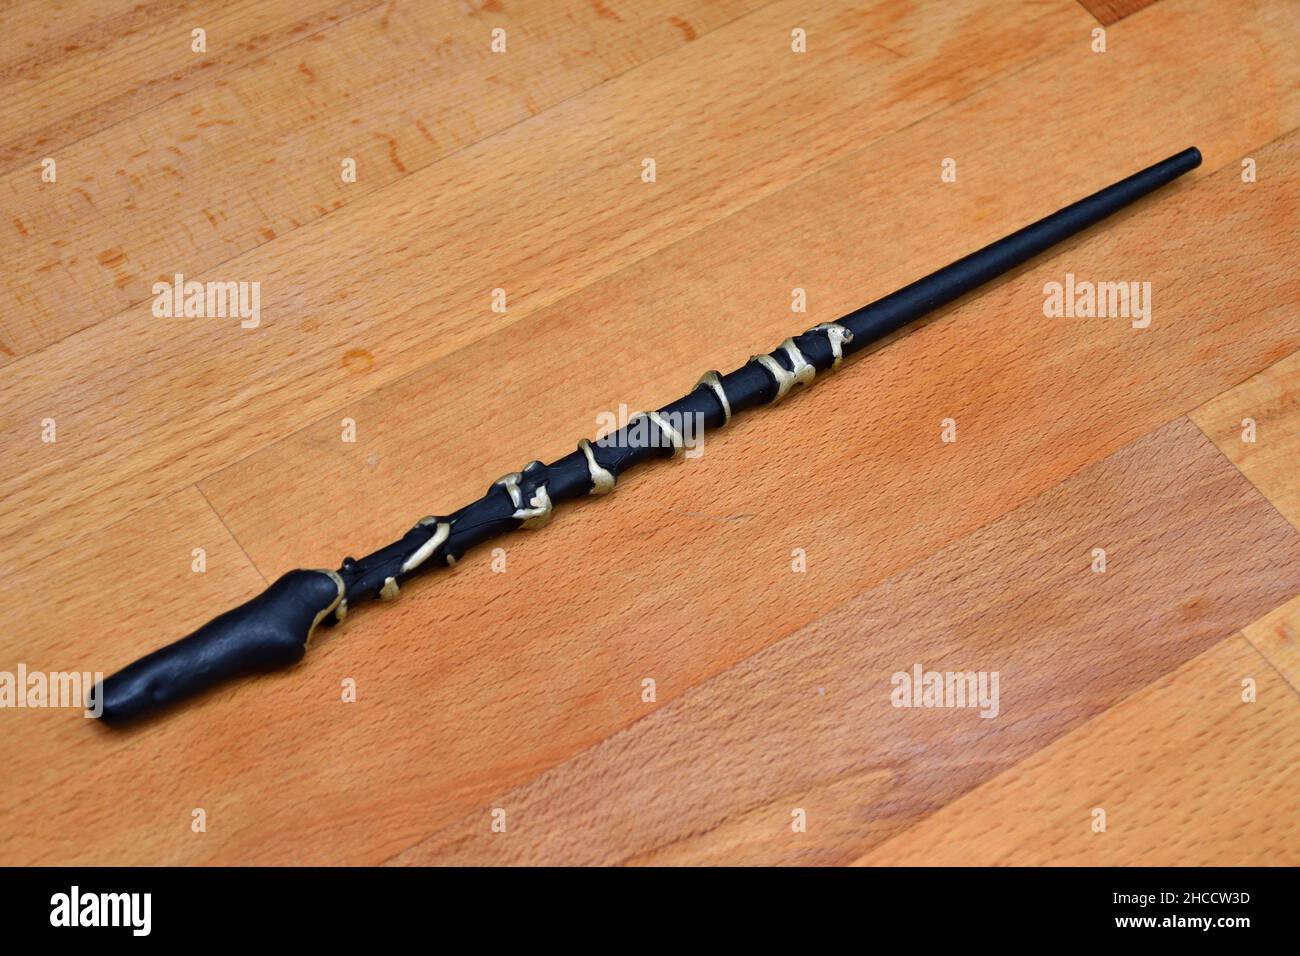 Handmade Harry Potter wand Stock Photo